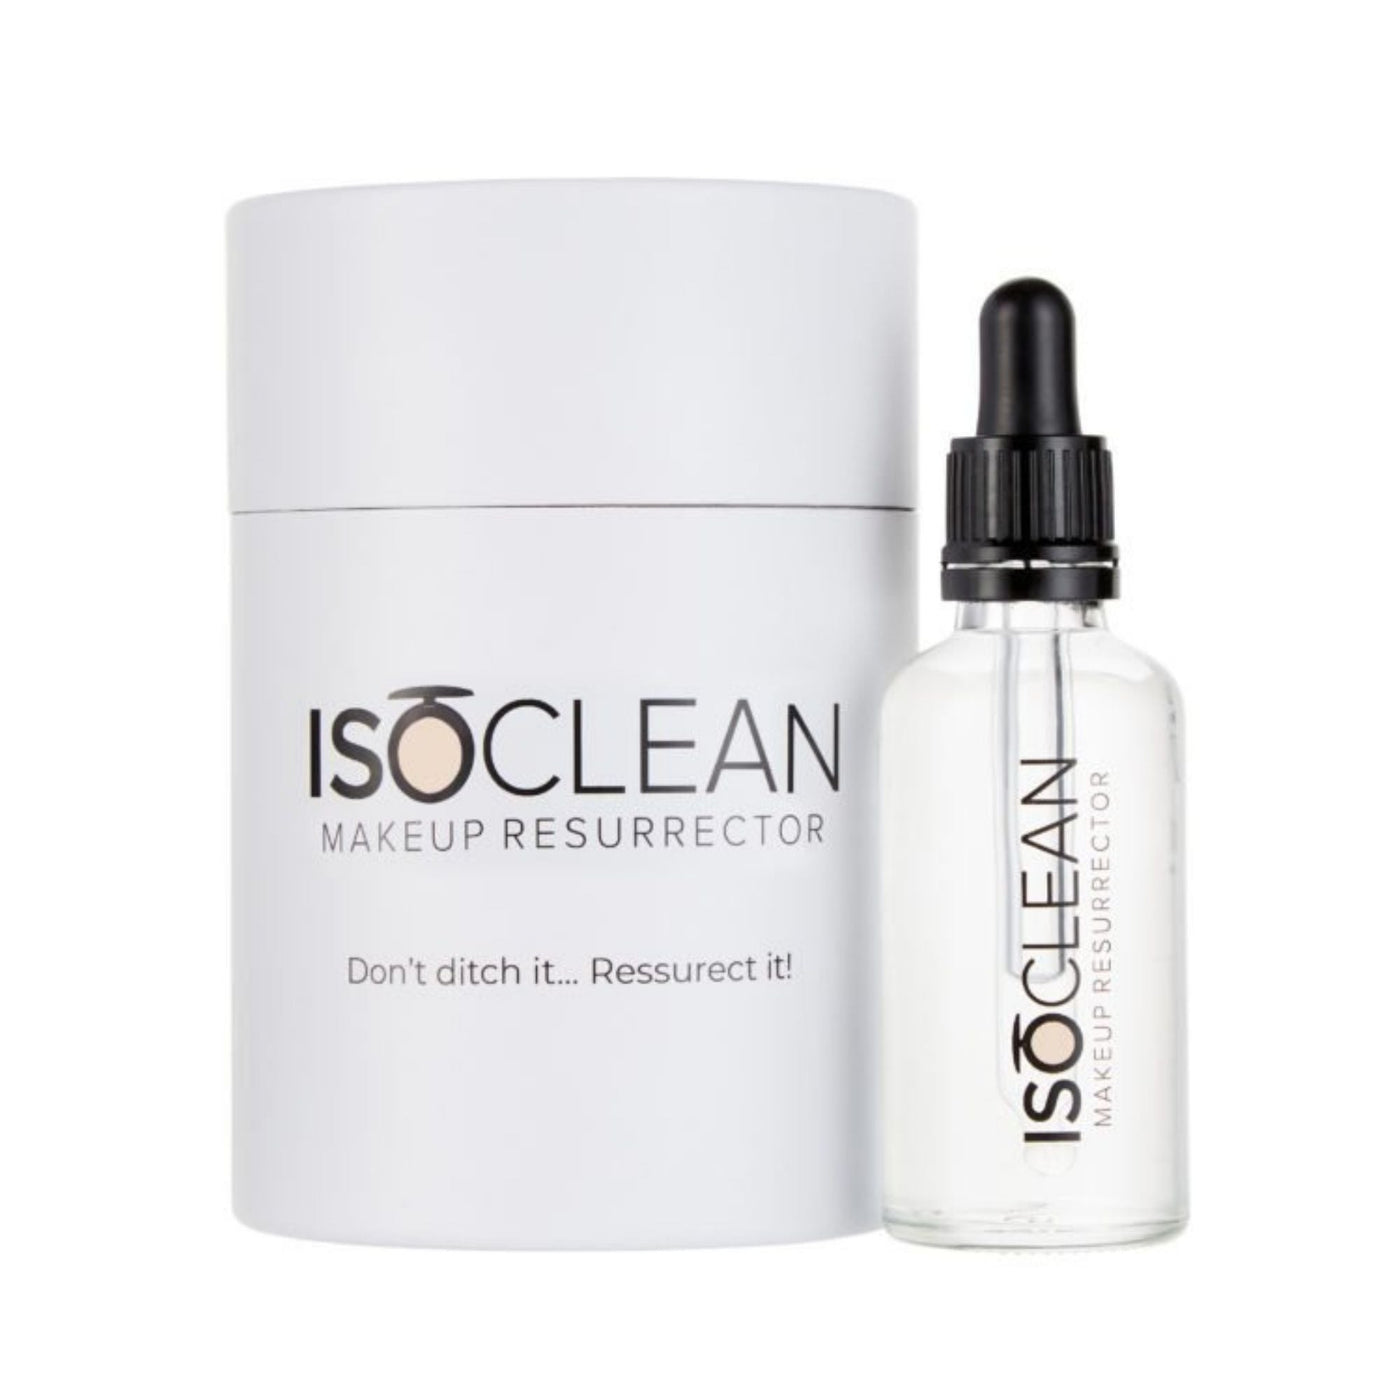 ISOCLEAN - Makeup Resurrector - 50ml